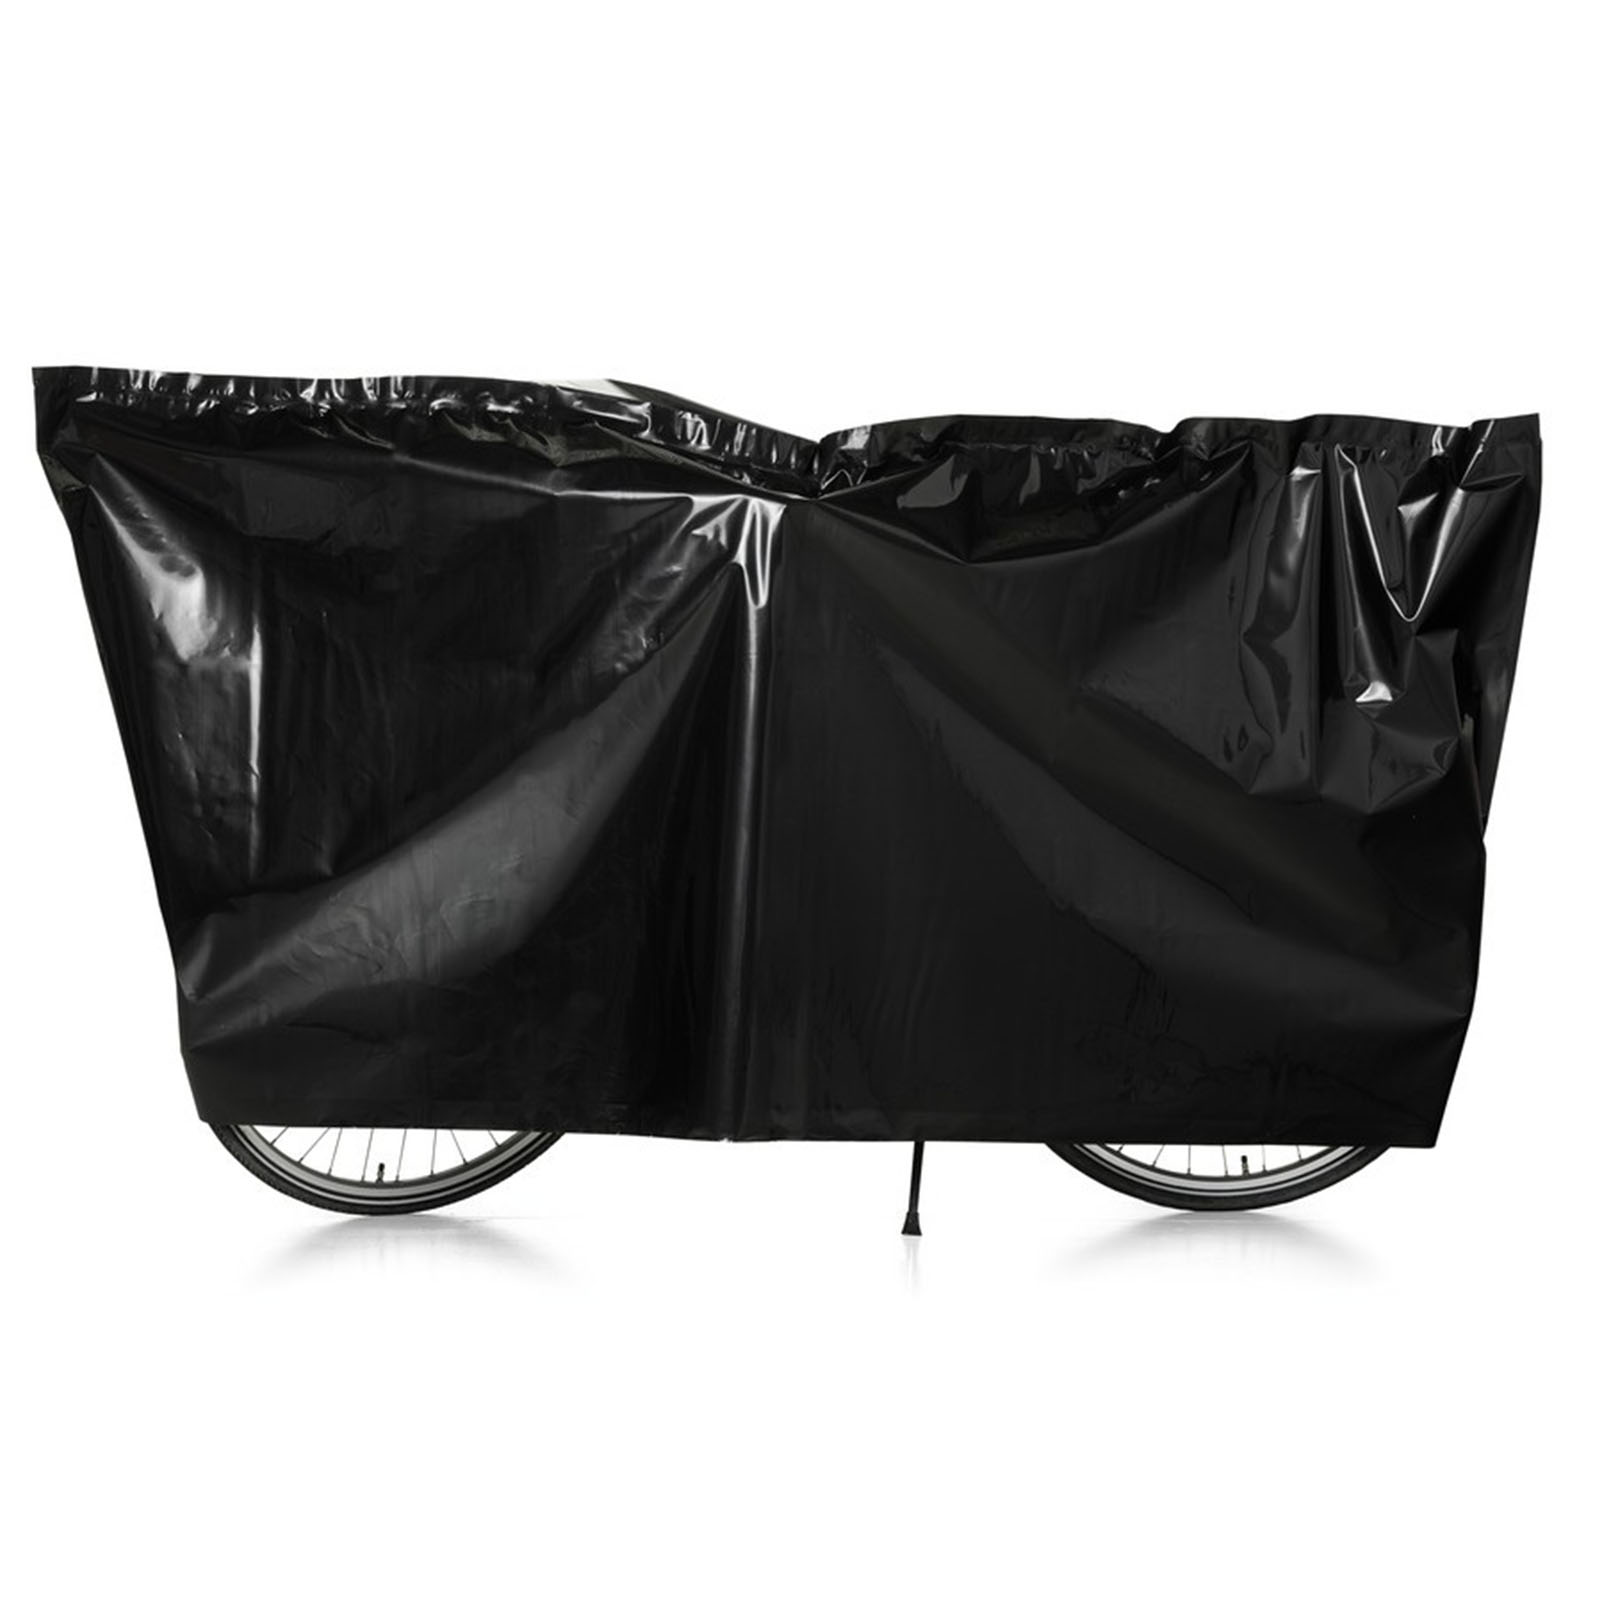 VK Fahrrad-Garage/Schutzhülle 100x220cm schwarz